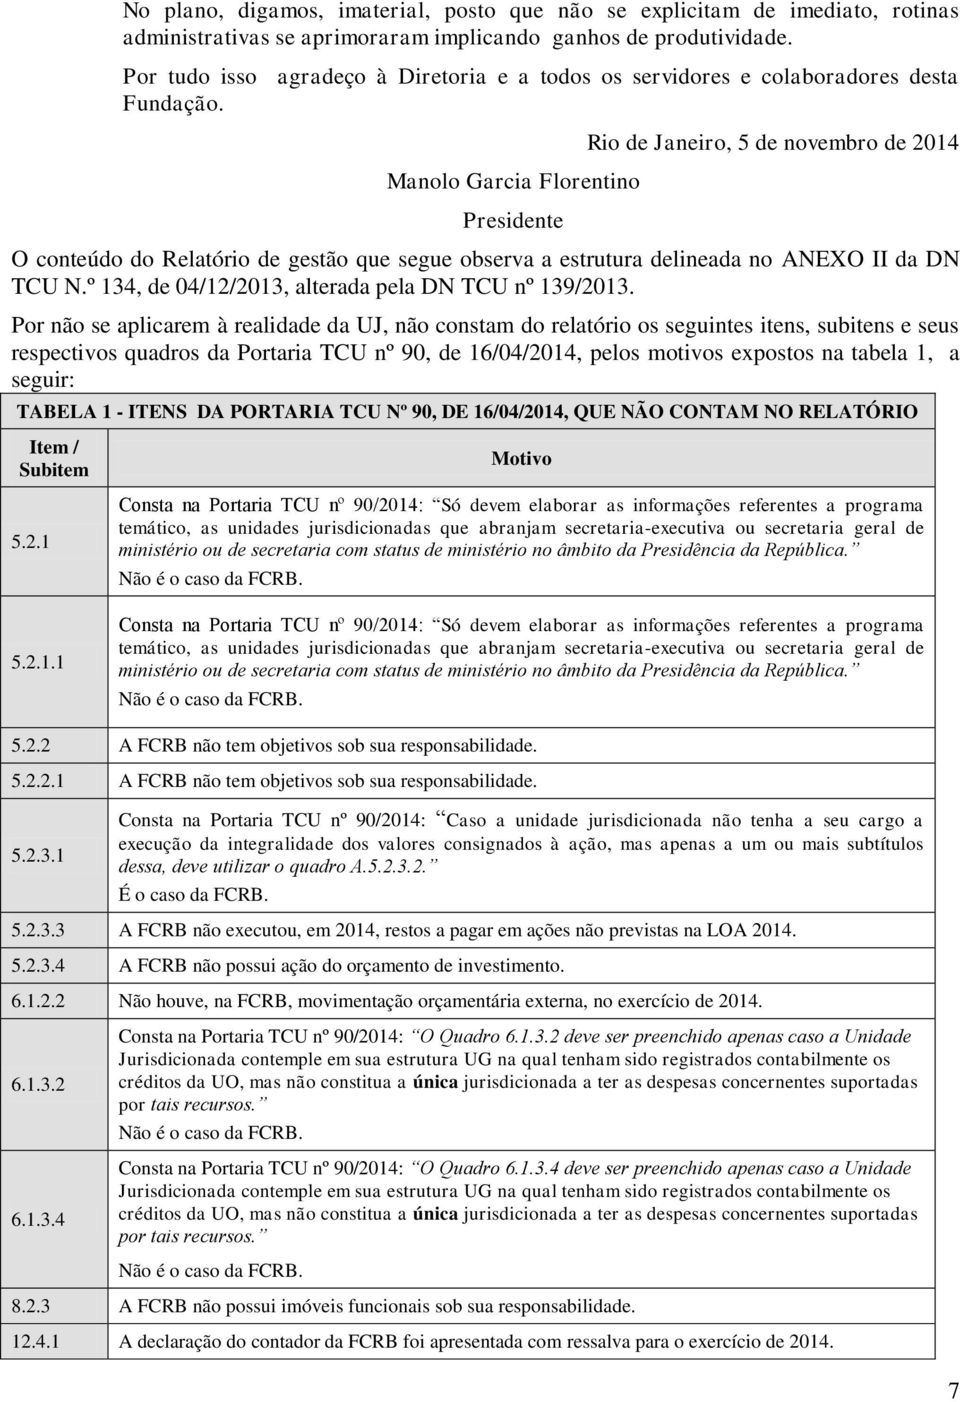 Manolo Garcia Florentino Presidente Rio de Janeiro, 5 de novembro de 2014 O conteúdo do Relatório de gestão que segue observa a estrutura delineada no ANEXO II da DN TCU N.